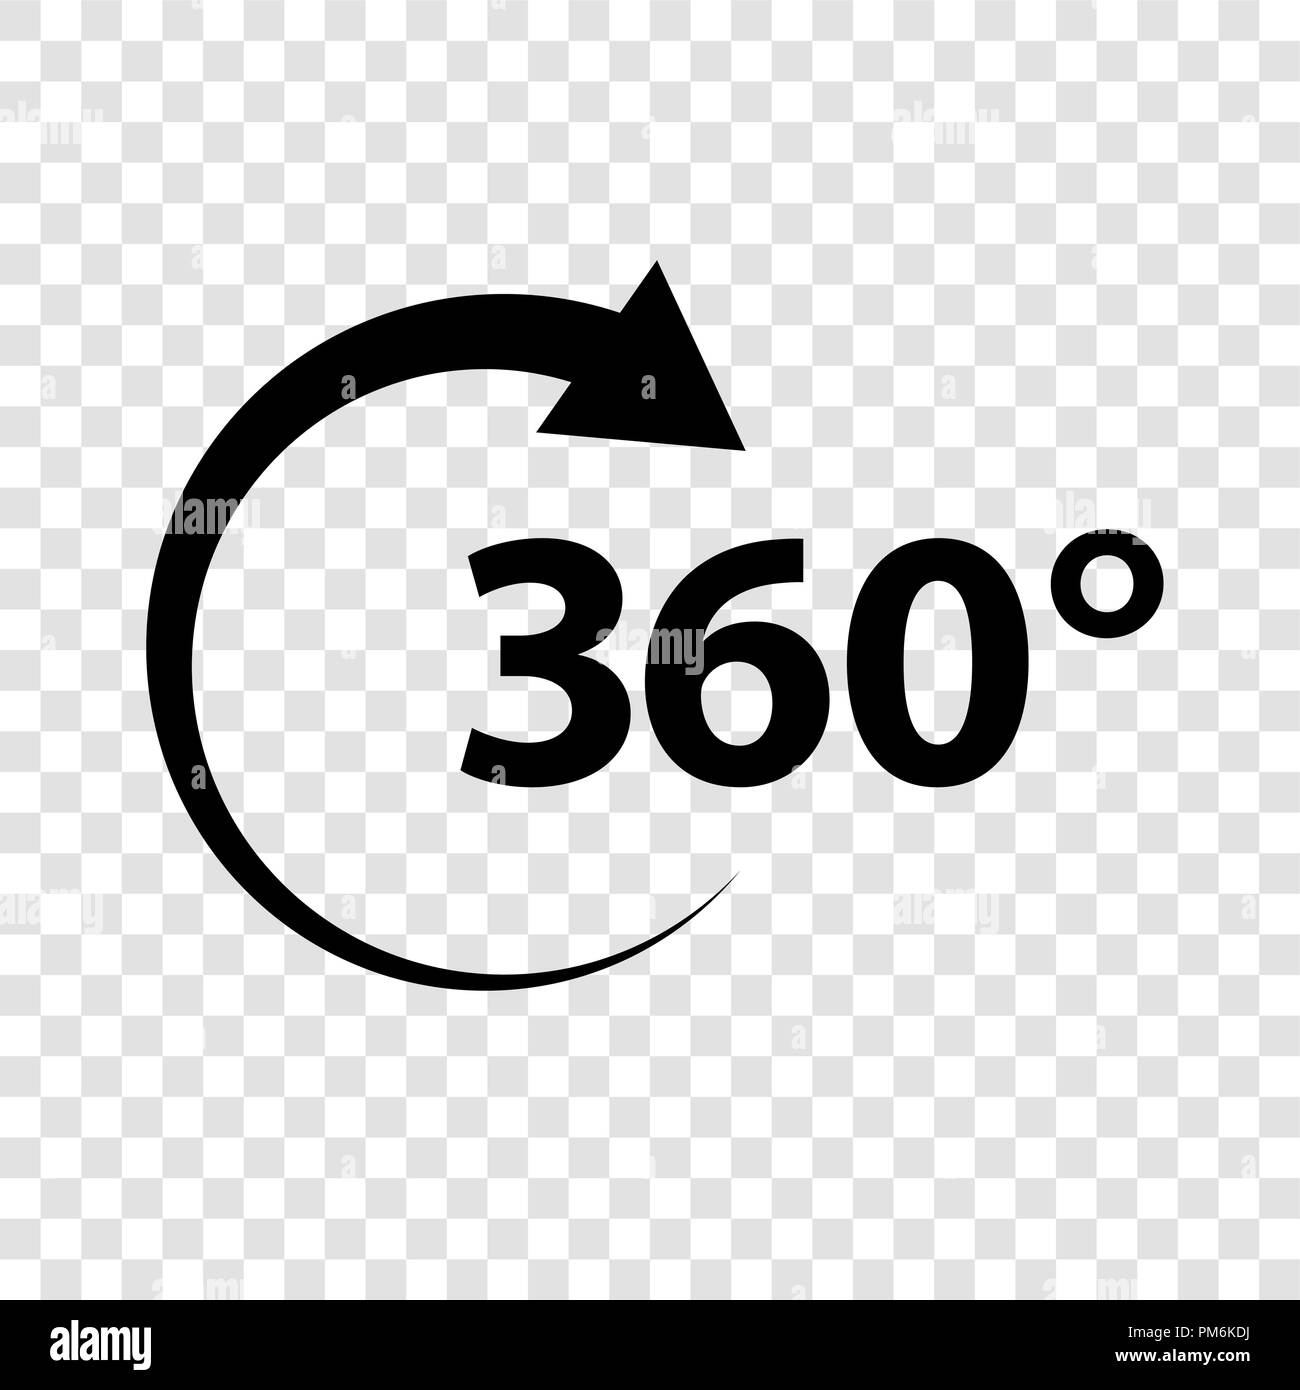 Icono de señal de 360 grados de ángulo de geometría de símbolos matemáticos rotación completa ilustración vectorial EPS10 Ilustración del Vector